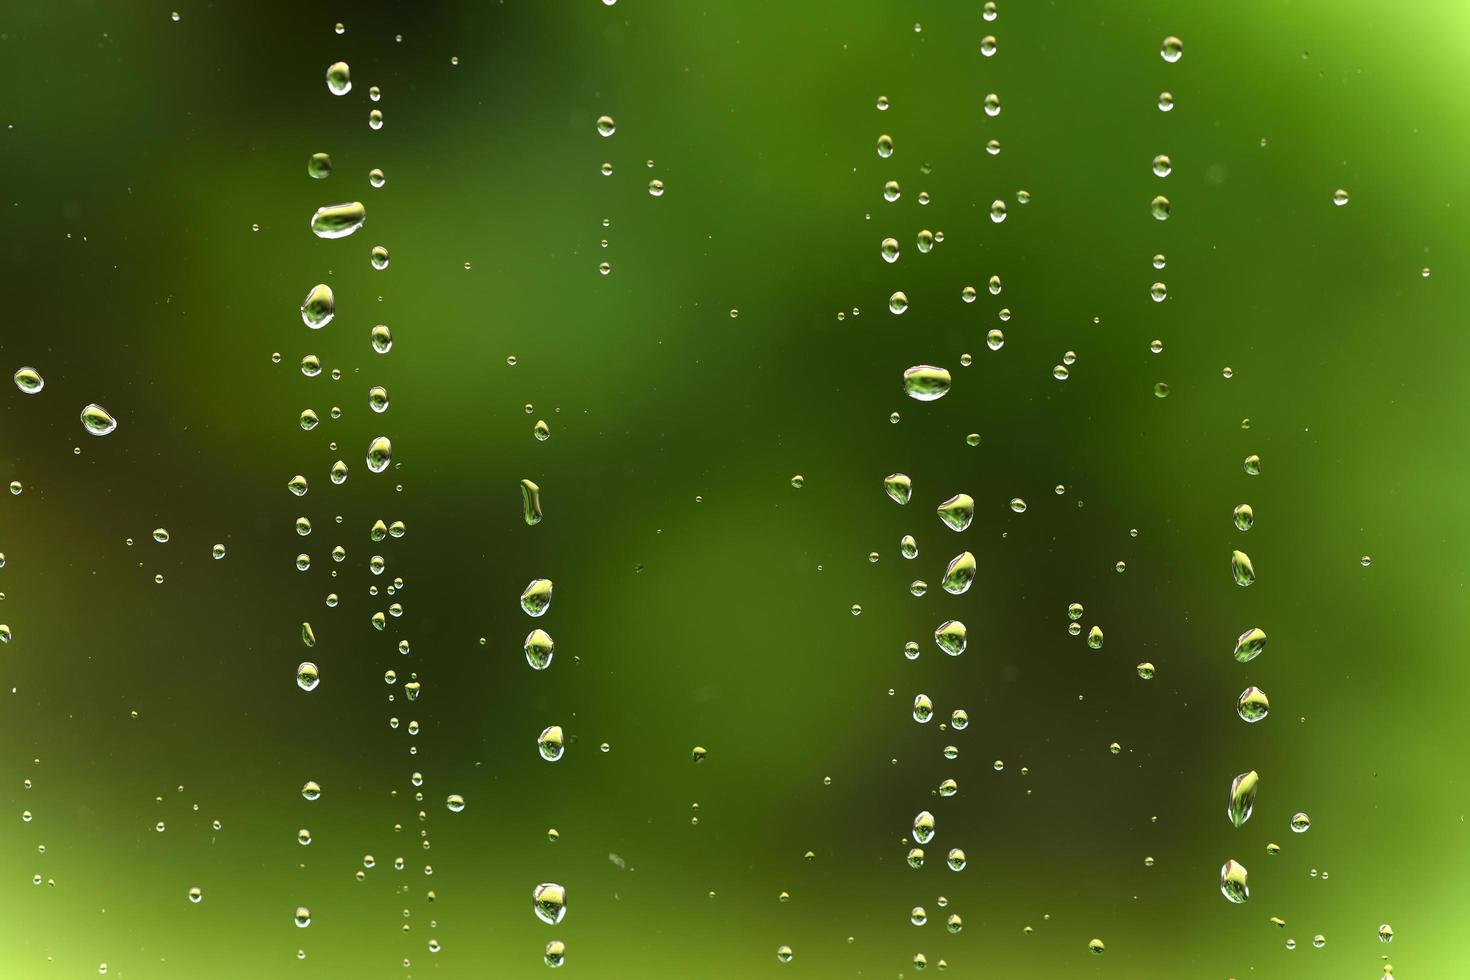 gocce di pioggia sulla finestra foto